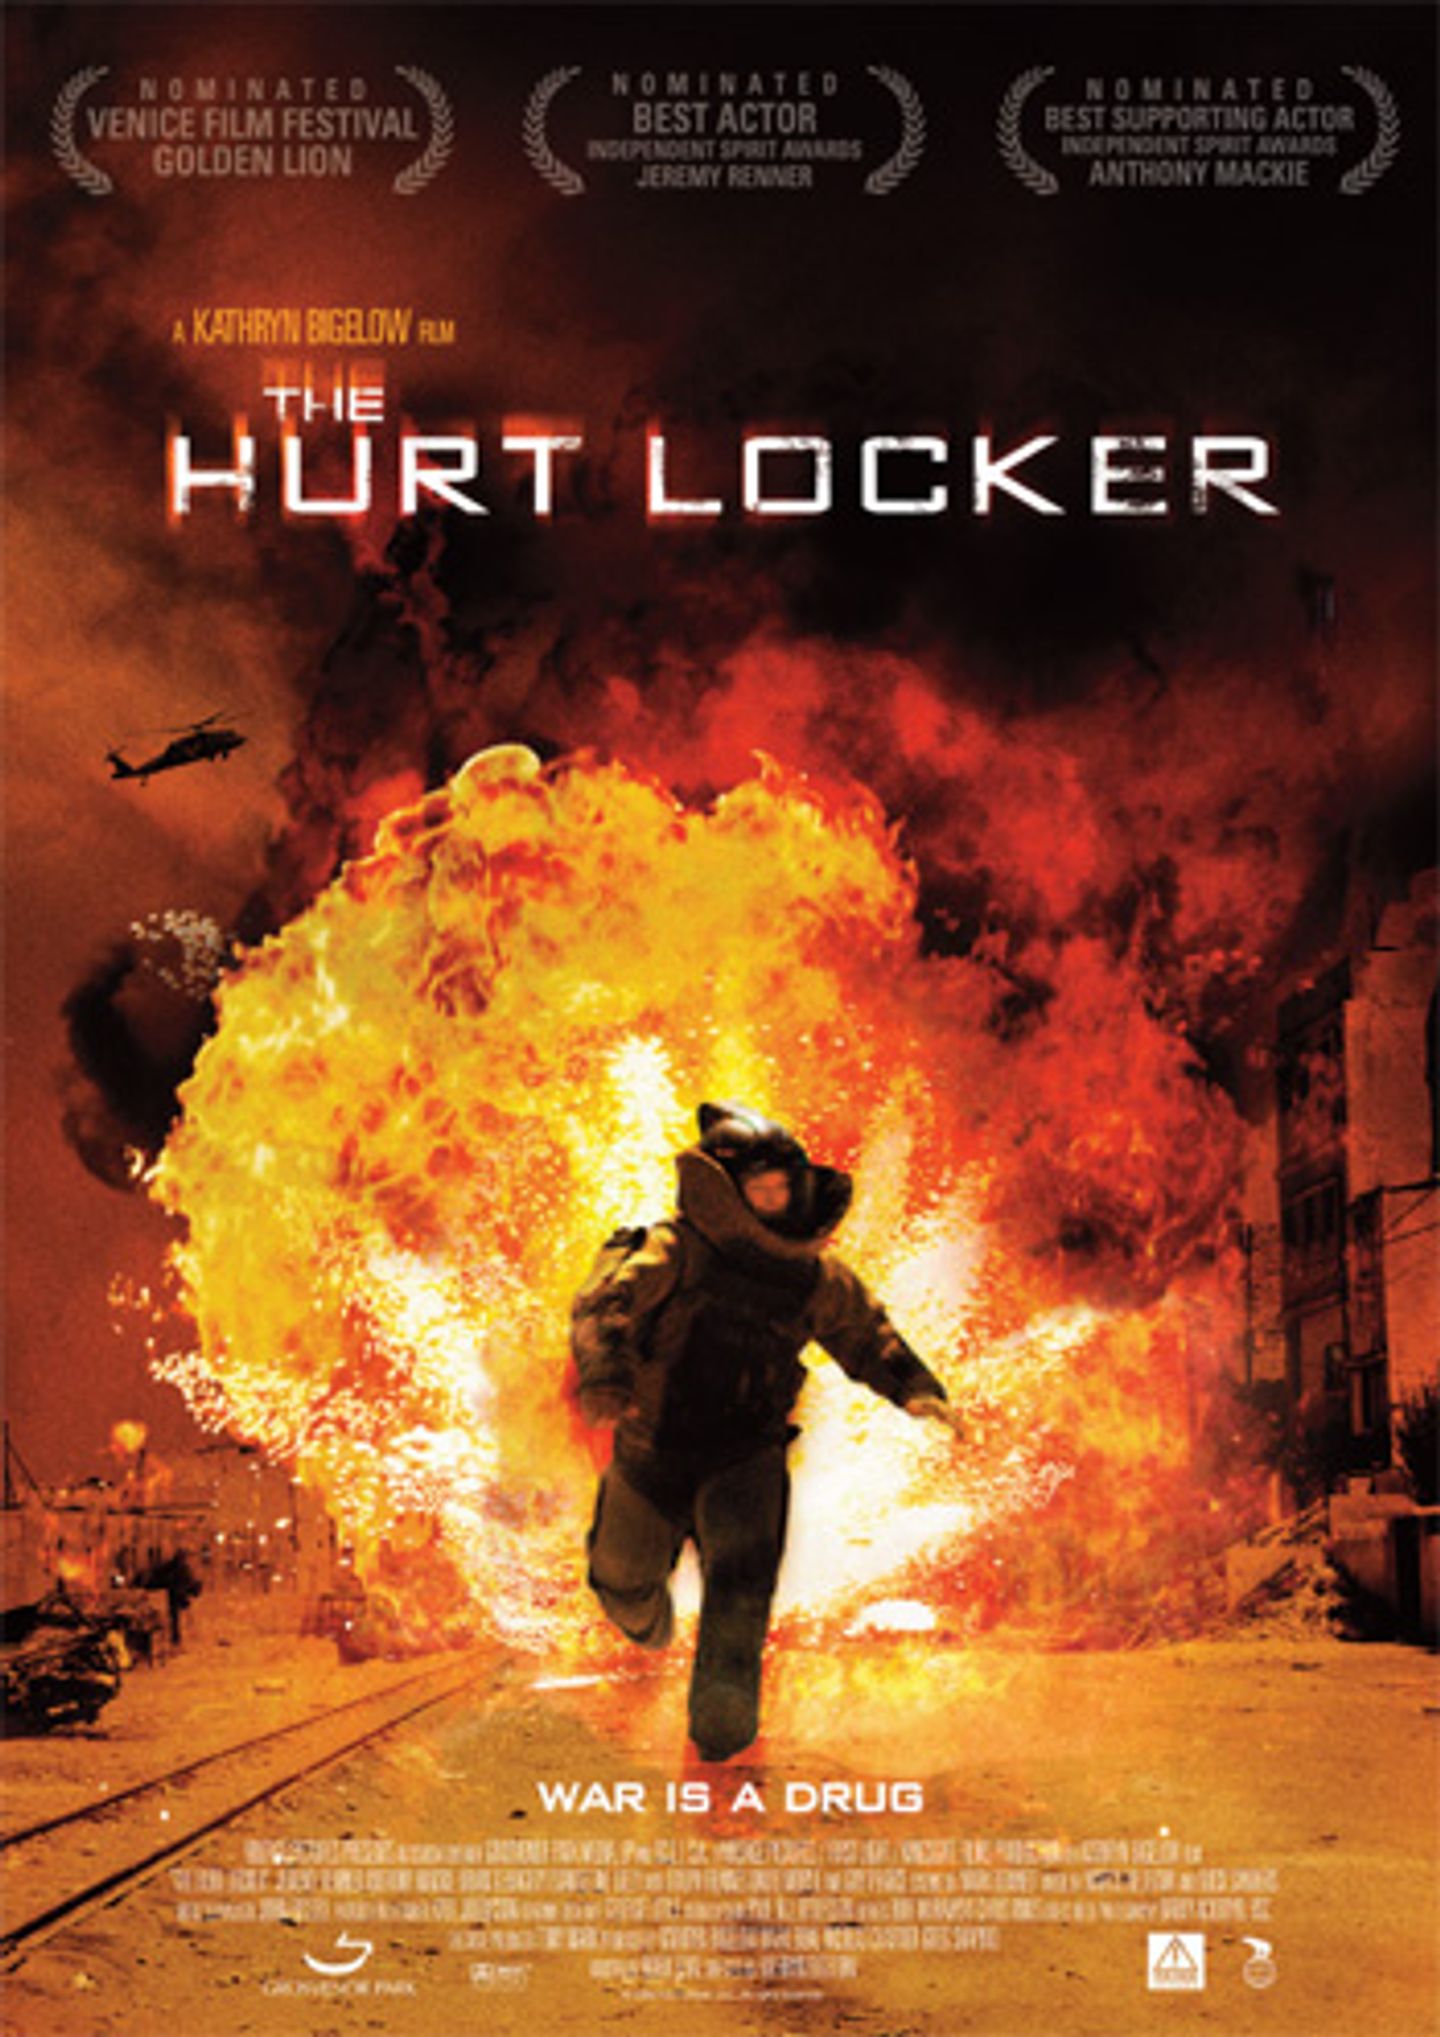 Plakat for 'The Hurt Locker'